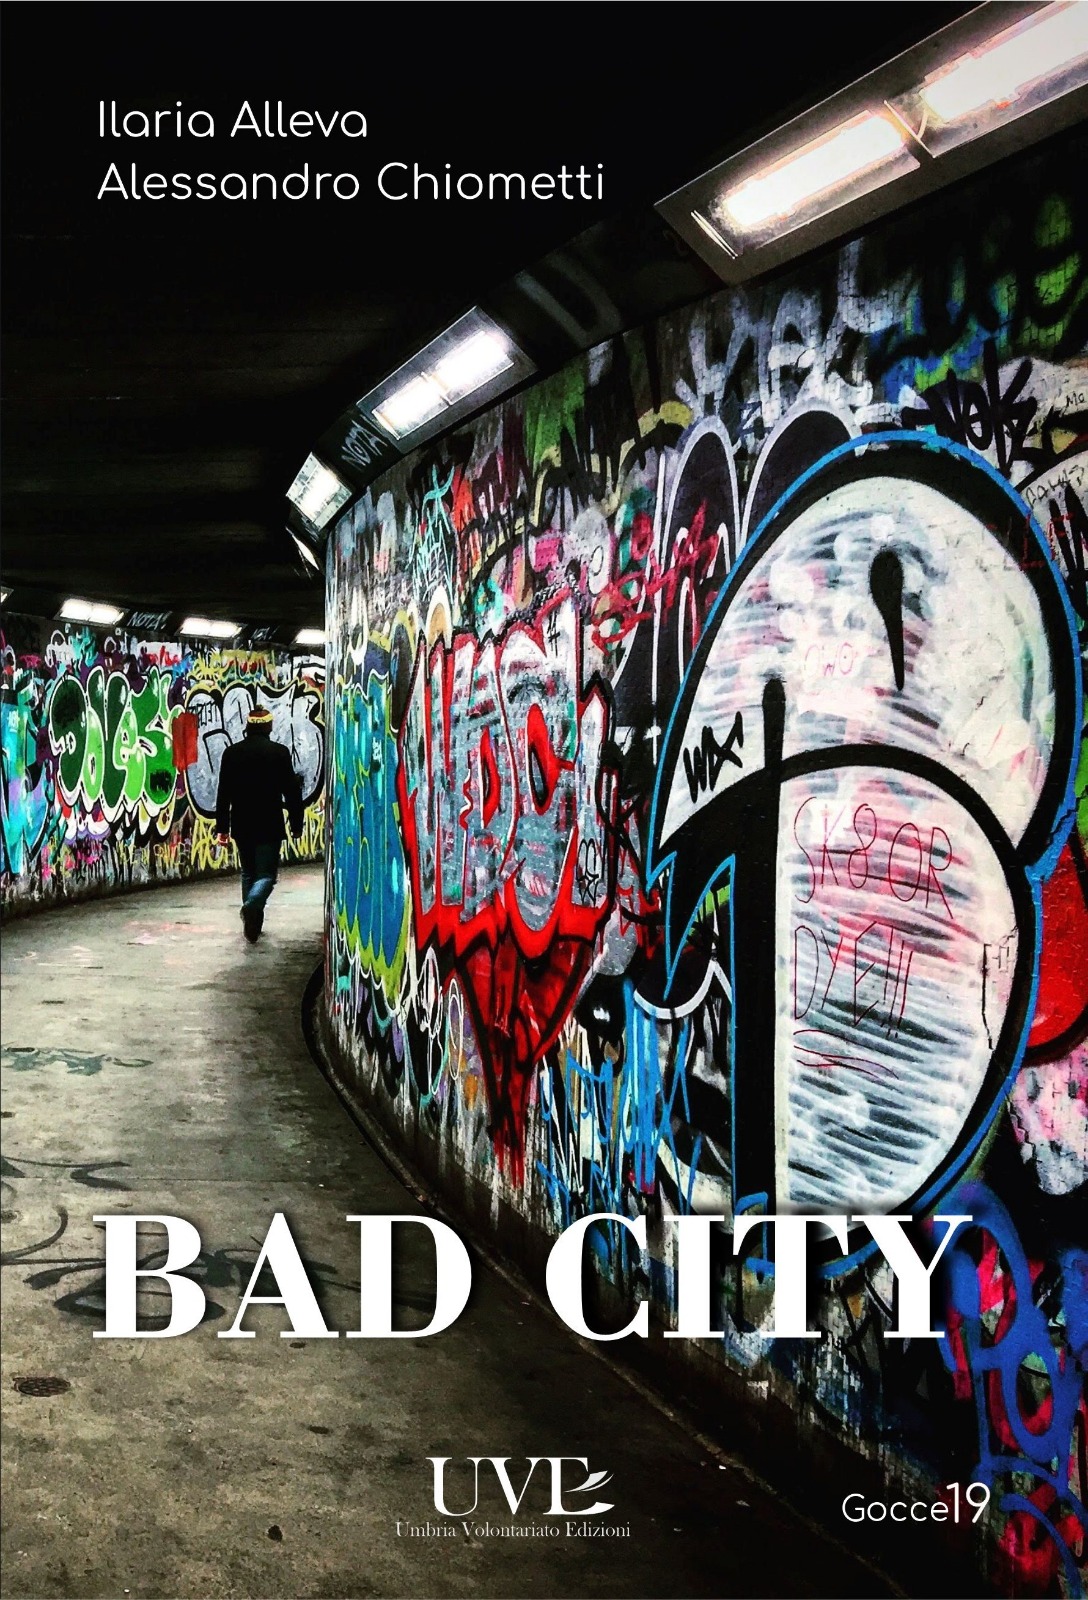 Recensione: “Bad city” di Ilaria Alleva e Alessandro Chiometti.